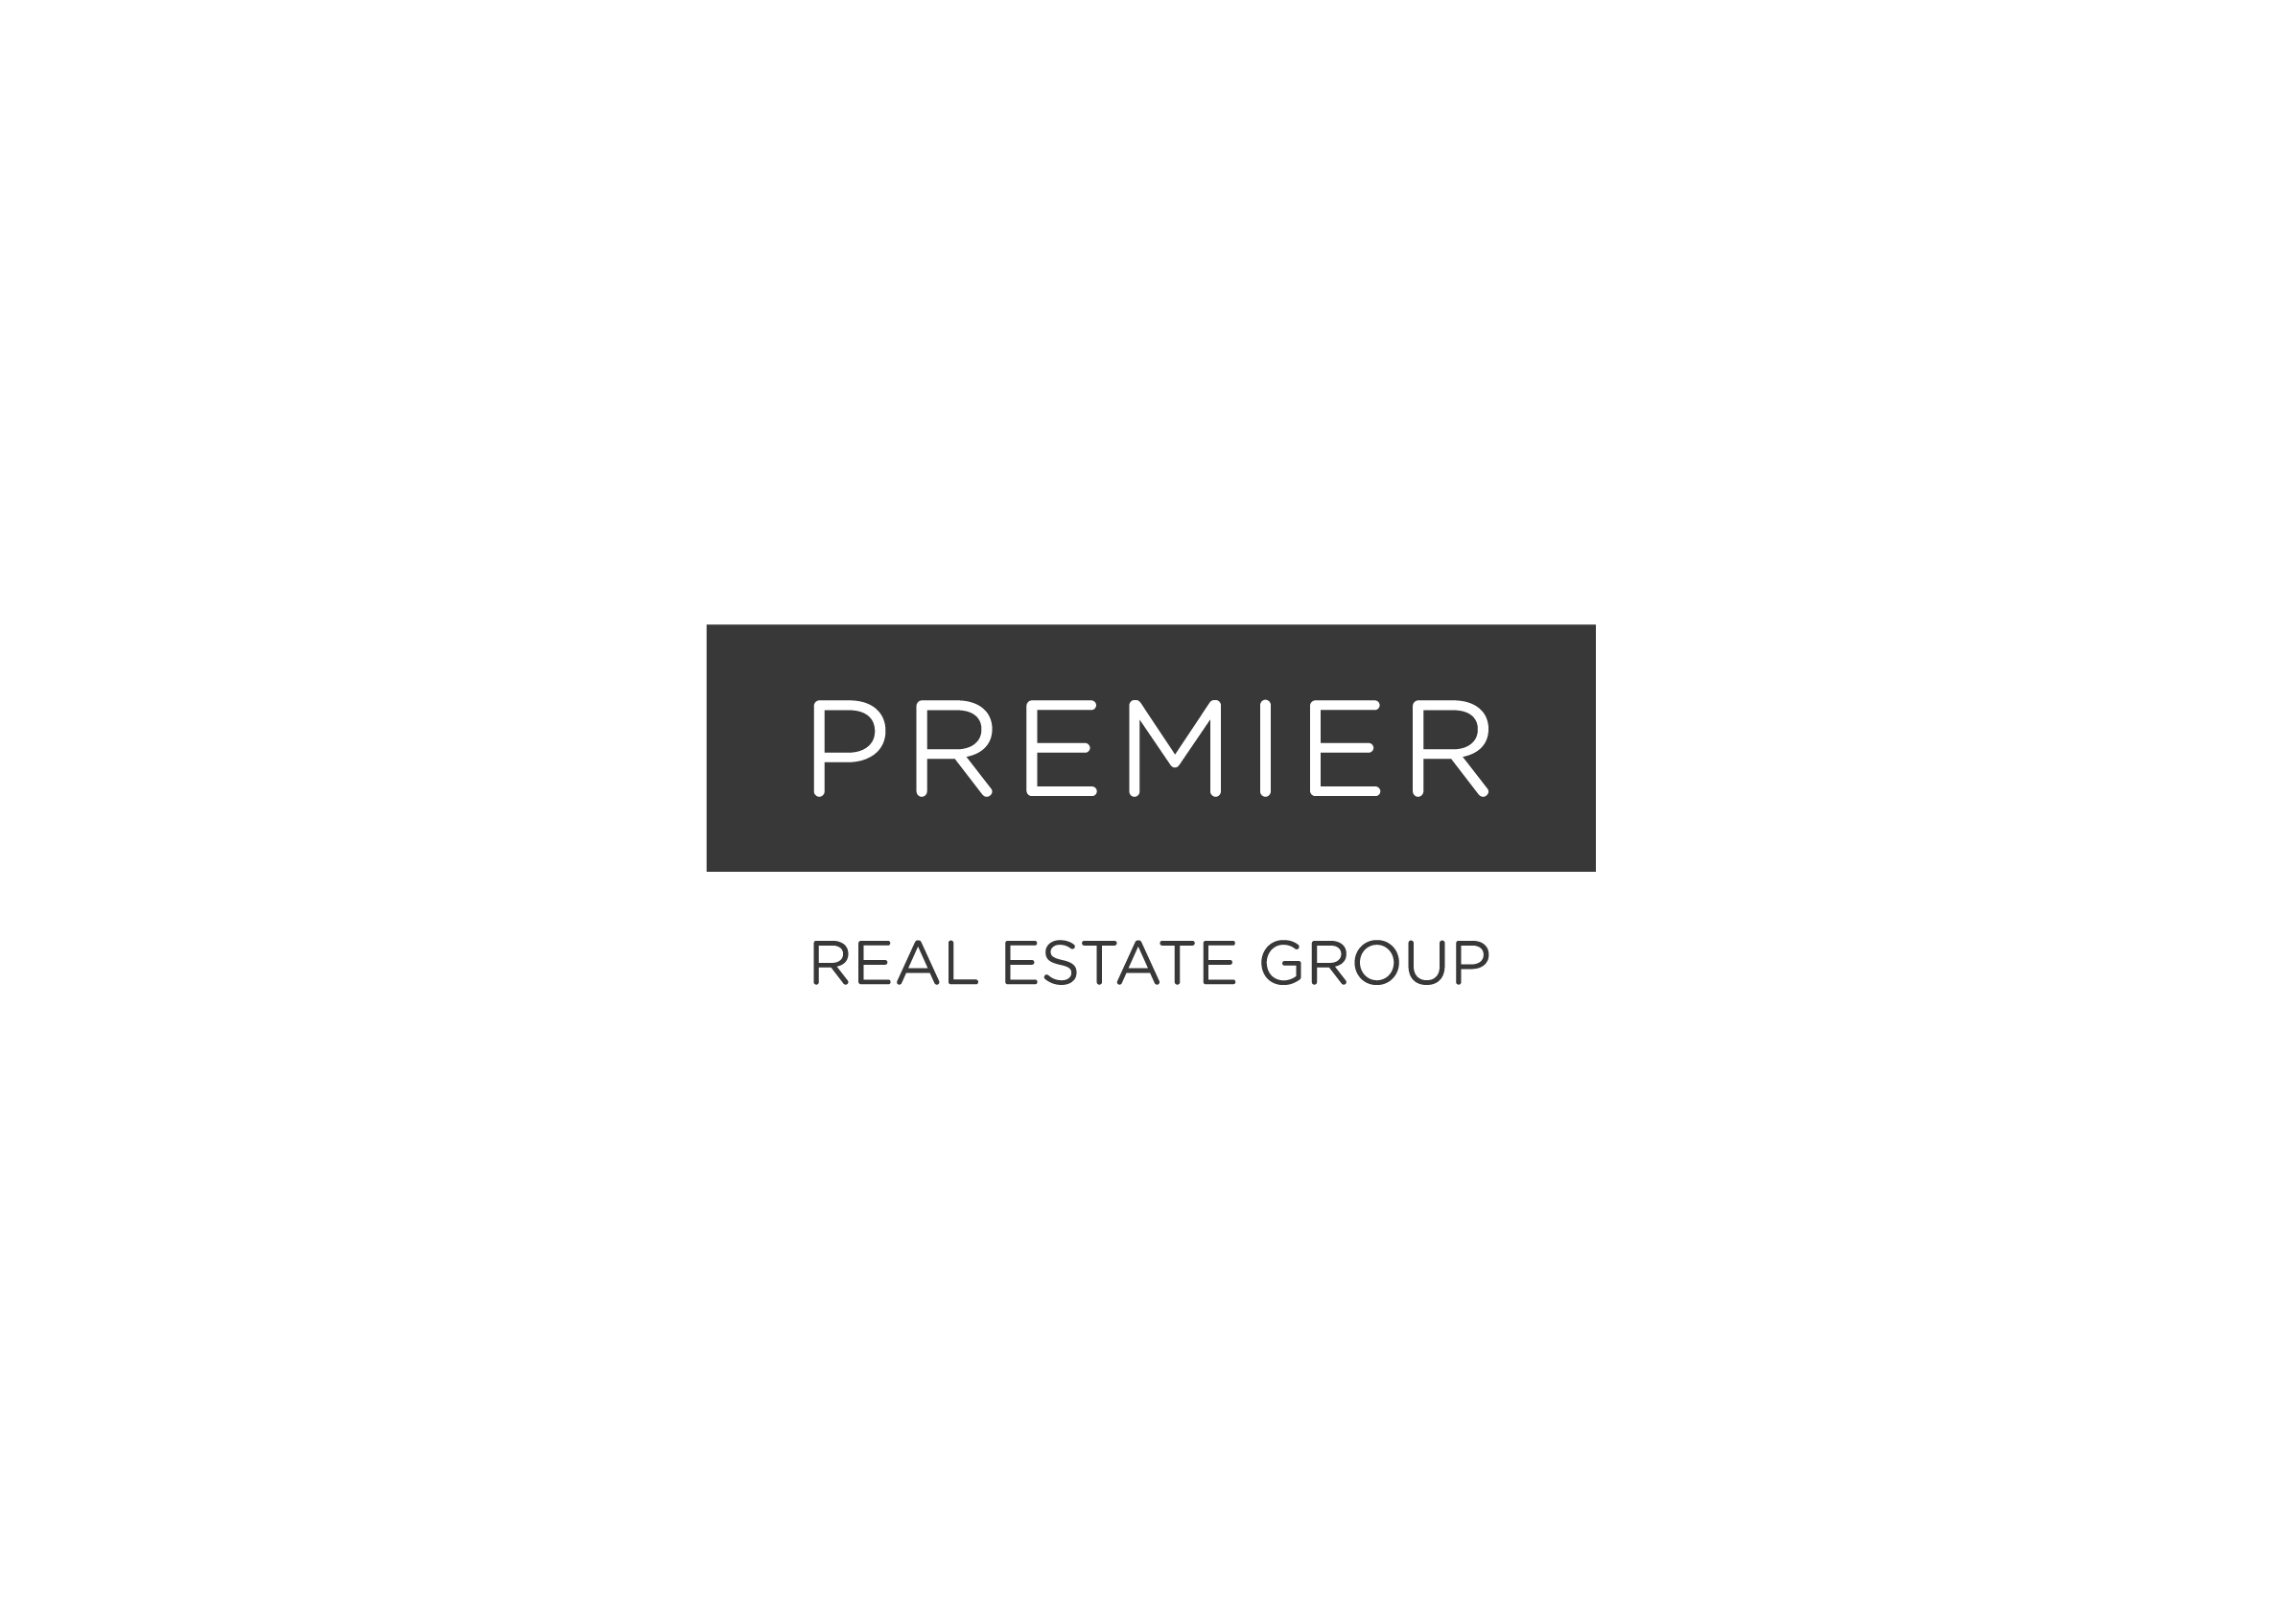 Old logo for Premier Real Estate